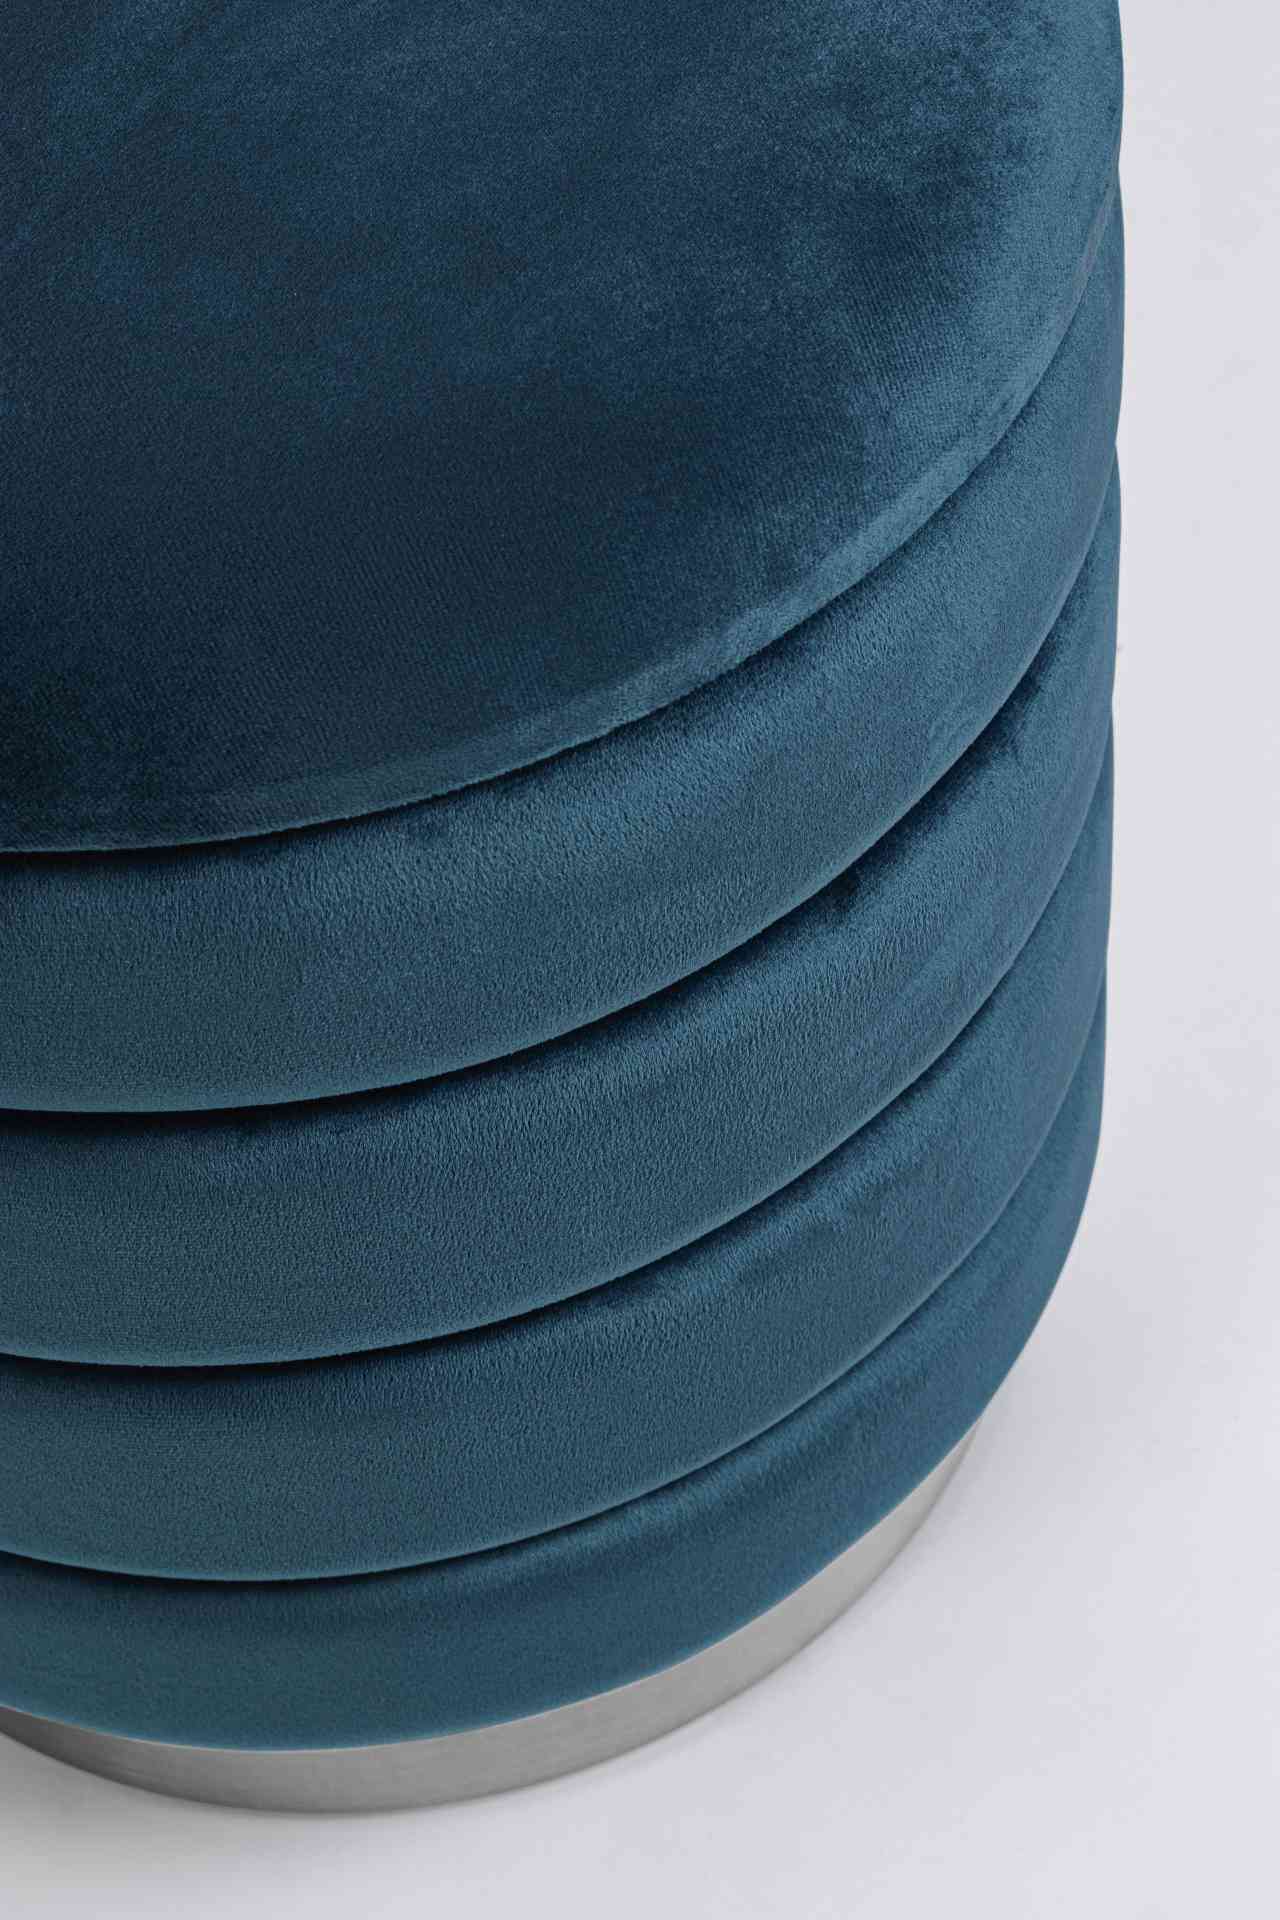 Der Pouf Darina überzeugt mit seinem modernen Design. Erhältlich ist er als 2er-Set. Gefertigt wurde er aus Stoff in Samt-Optik, welcher einen blauen Farbton besitzt. Das Gestell ist aus Metall und hat eine silberne Farbe. Der Durchmesser beträgt 40 cm.